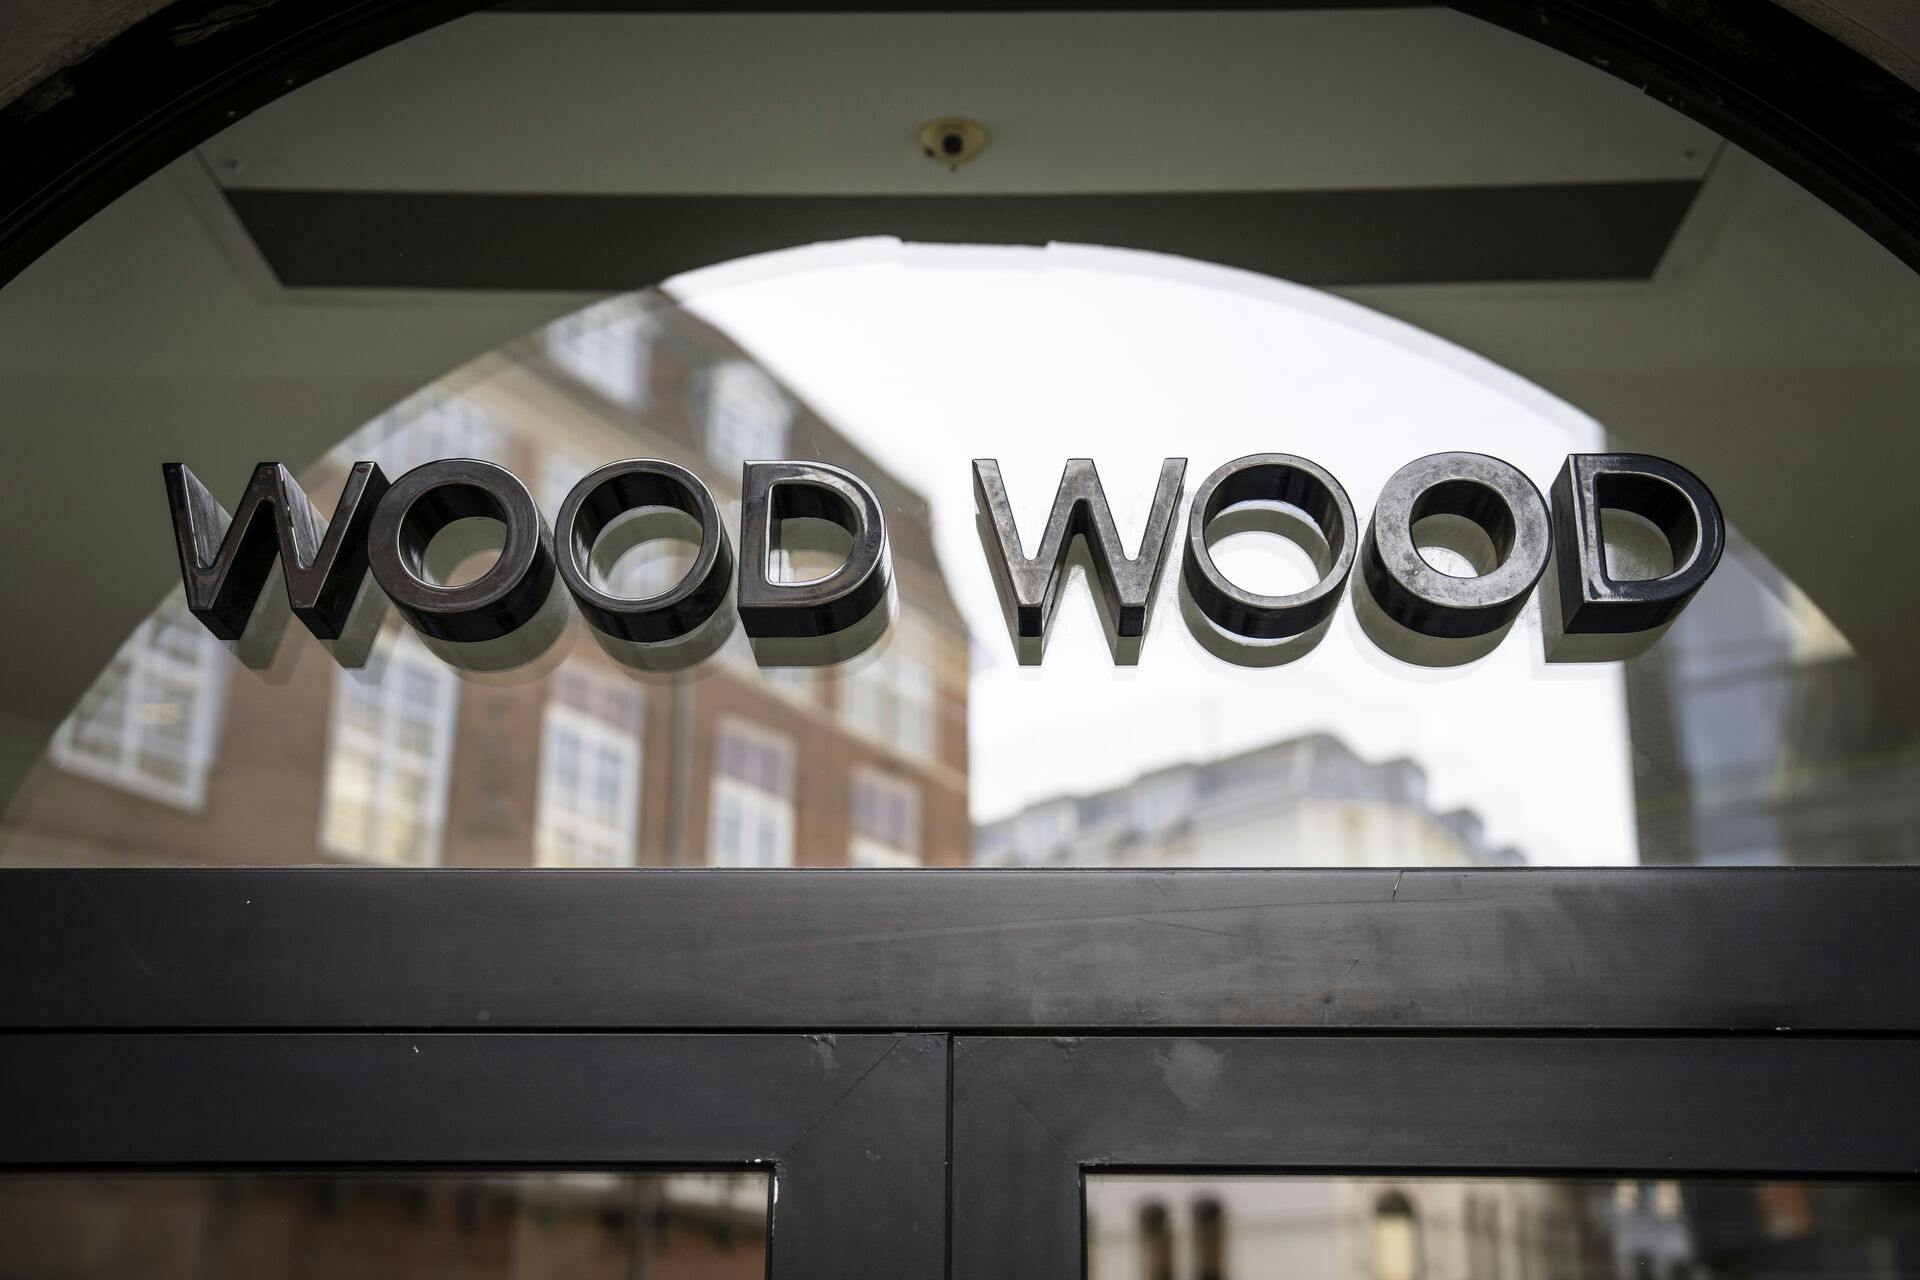 Tøjmærket Wood Wood gik konkurs for 14 dage siden, men nu genopstår tøjmærket. DK Company har købt aktiviteterne i det konkursramte selskab bag Wood Wood.